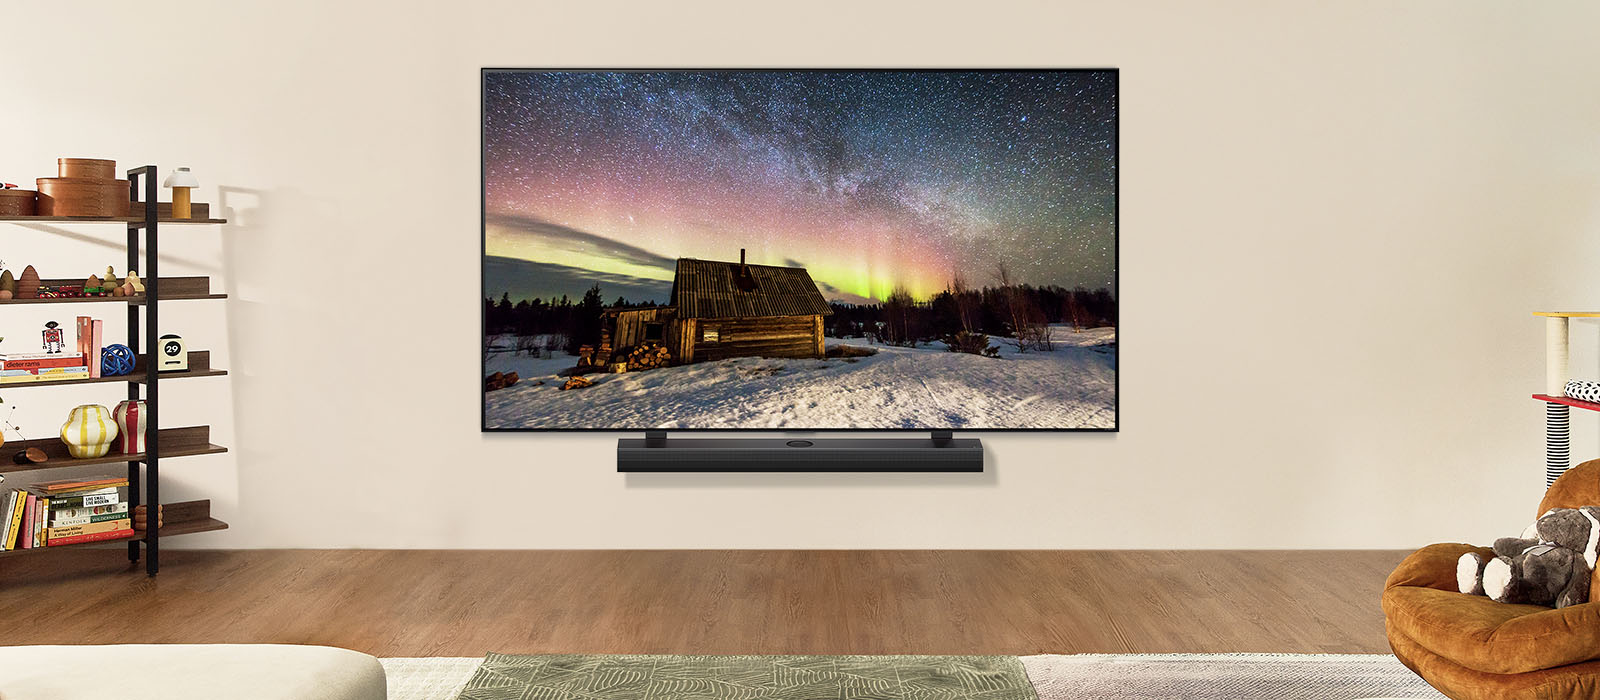 白天時位於現代客廳空間的 LG TV 和 LG Soundbar。極光螢幕影像隨著理想亮度顯示。